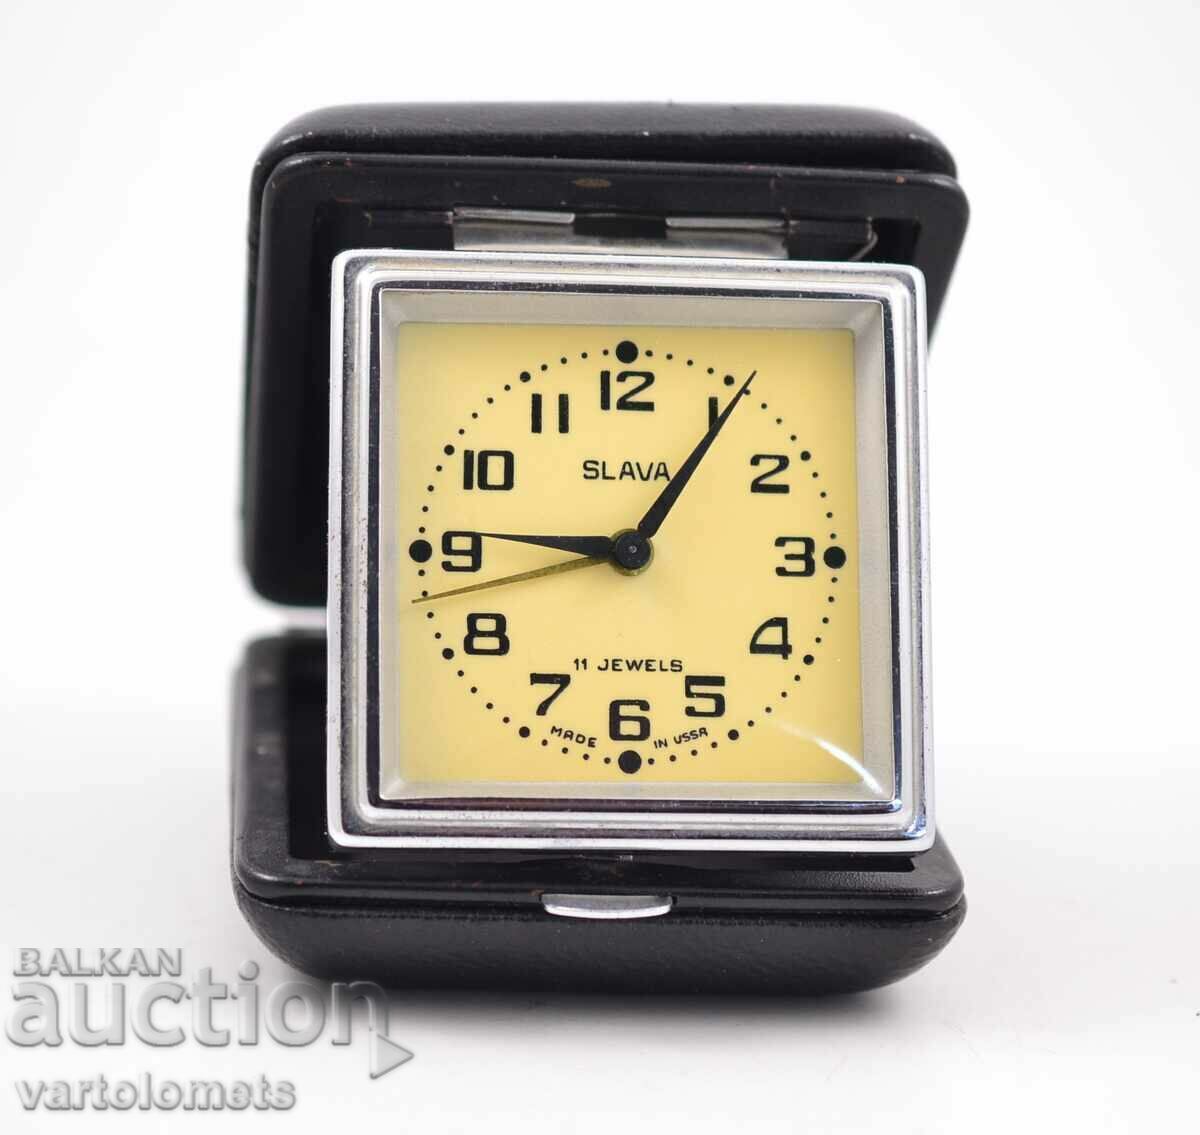 Tourist alarm clock SLAVA USSR - works